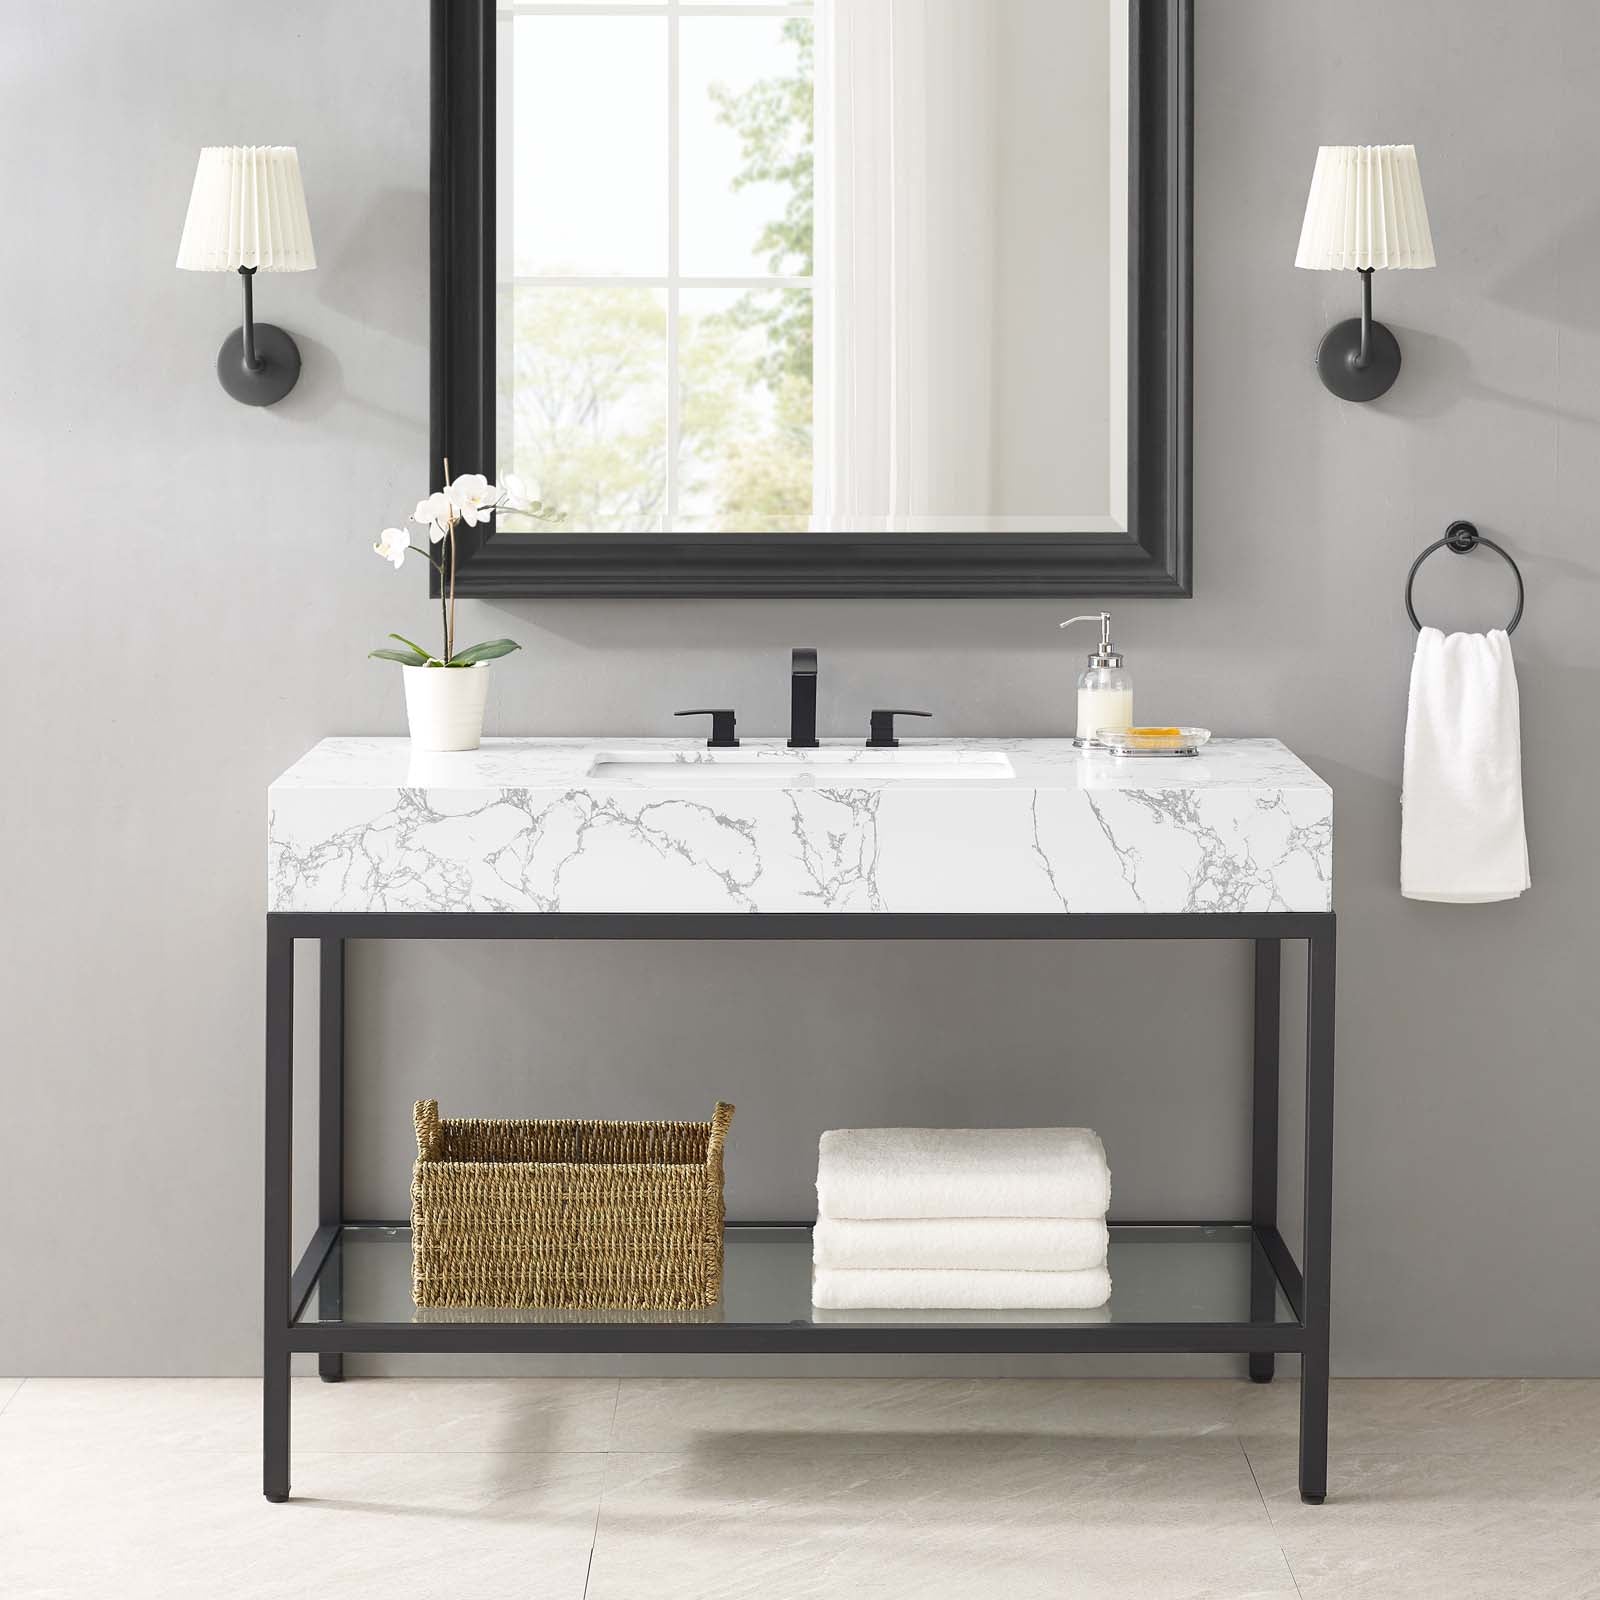 Kingsley 50" Black Stainless Steel Bathroom Vanity